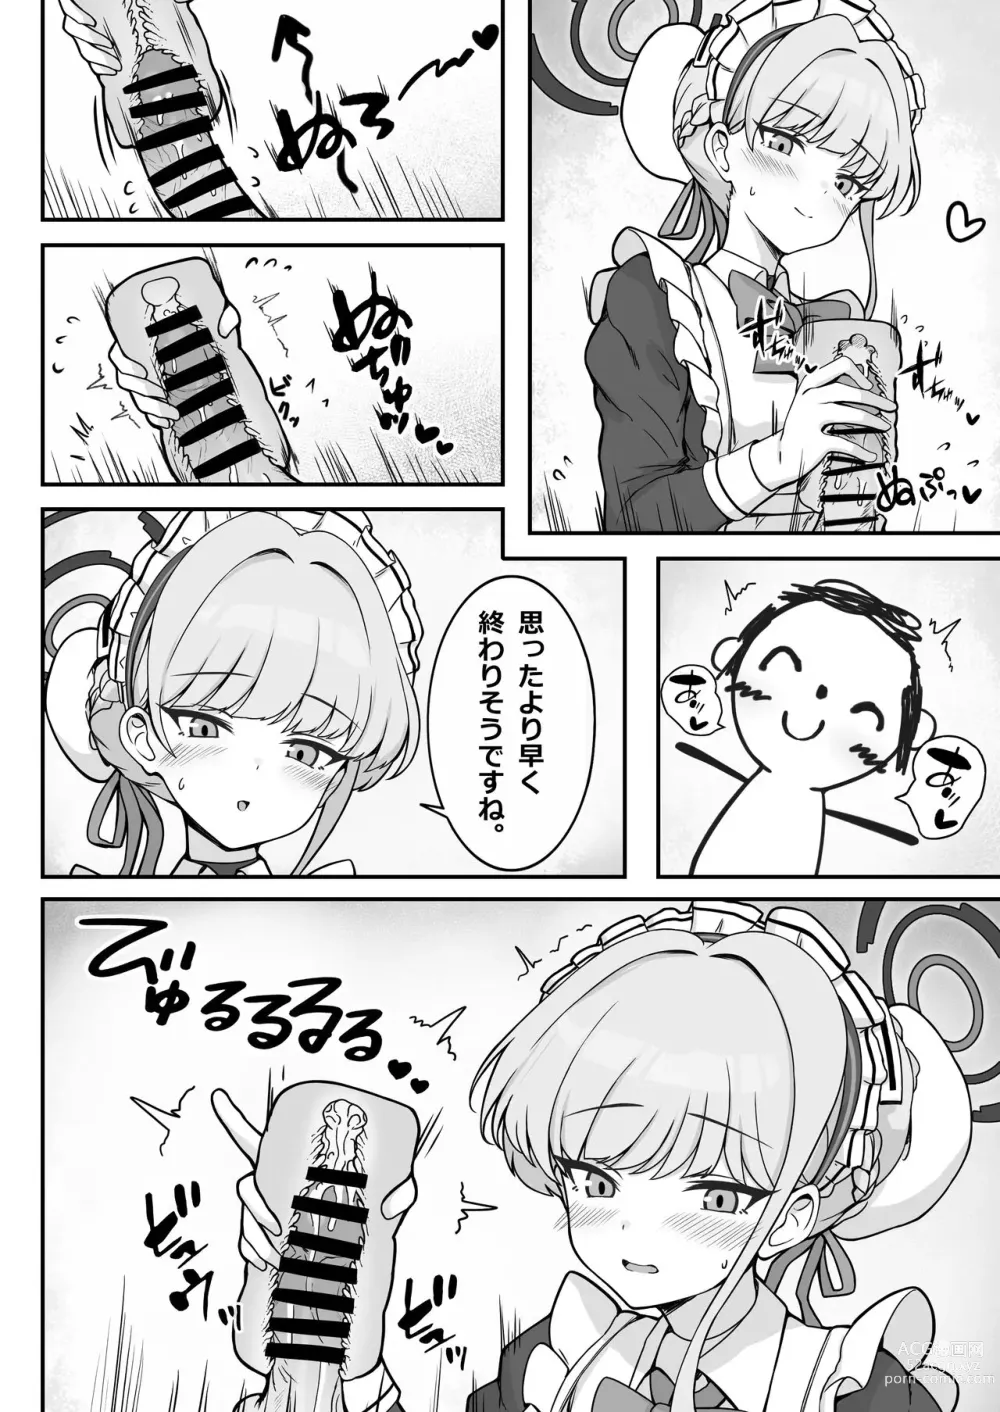 Page 3 of doujinshi Toki-chan Manga?